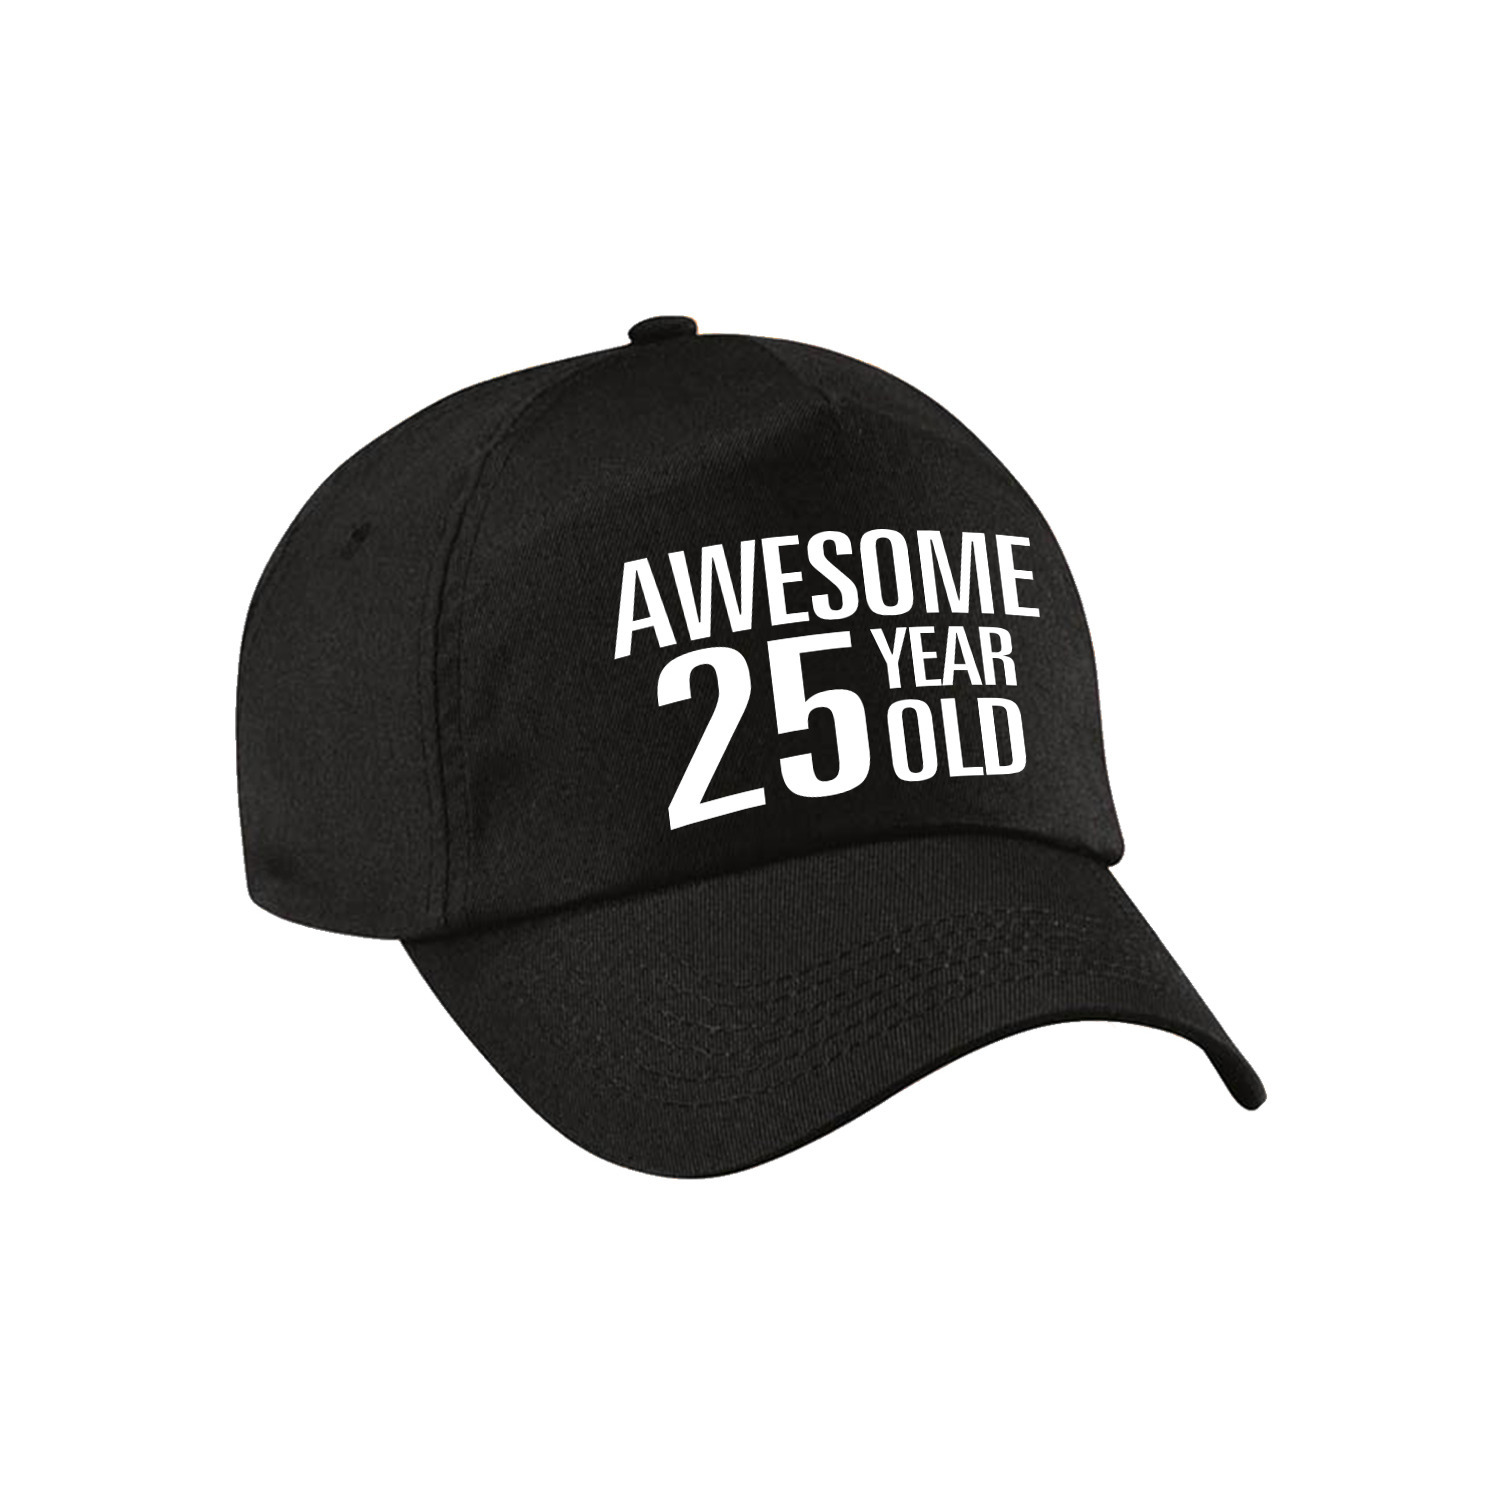 Awesome 25 year old verjaardag pet / cap zwart voor dames en heren